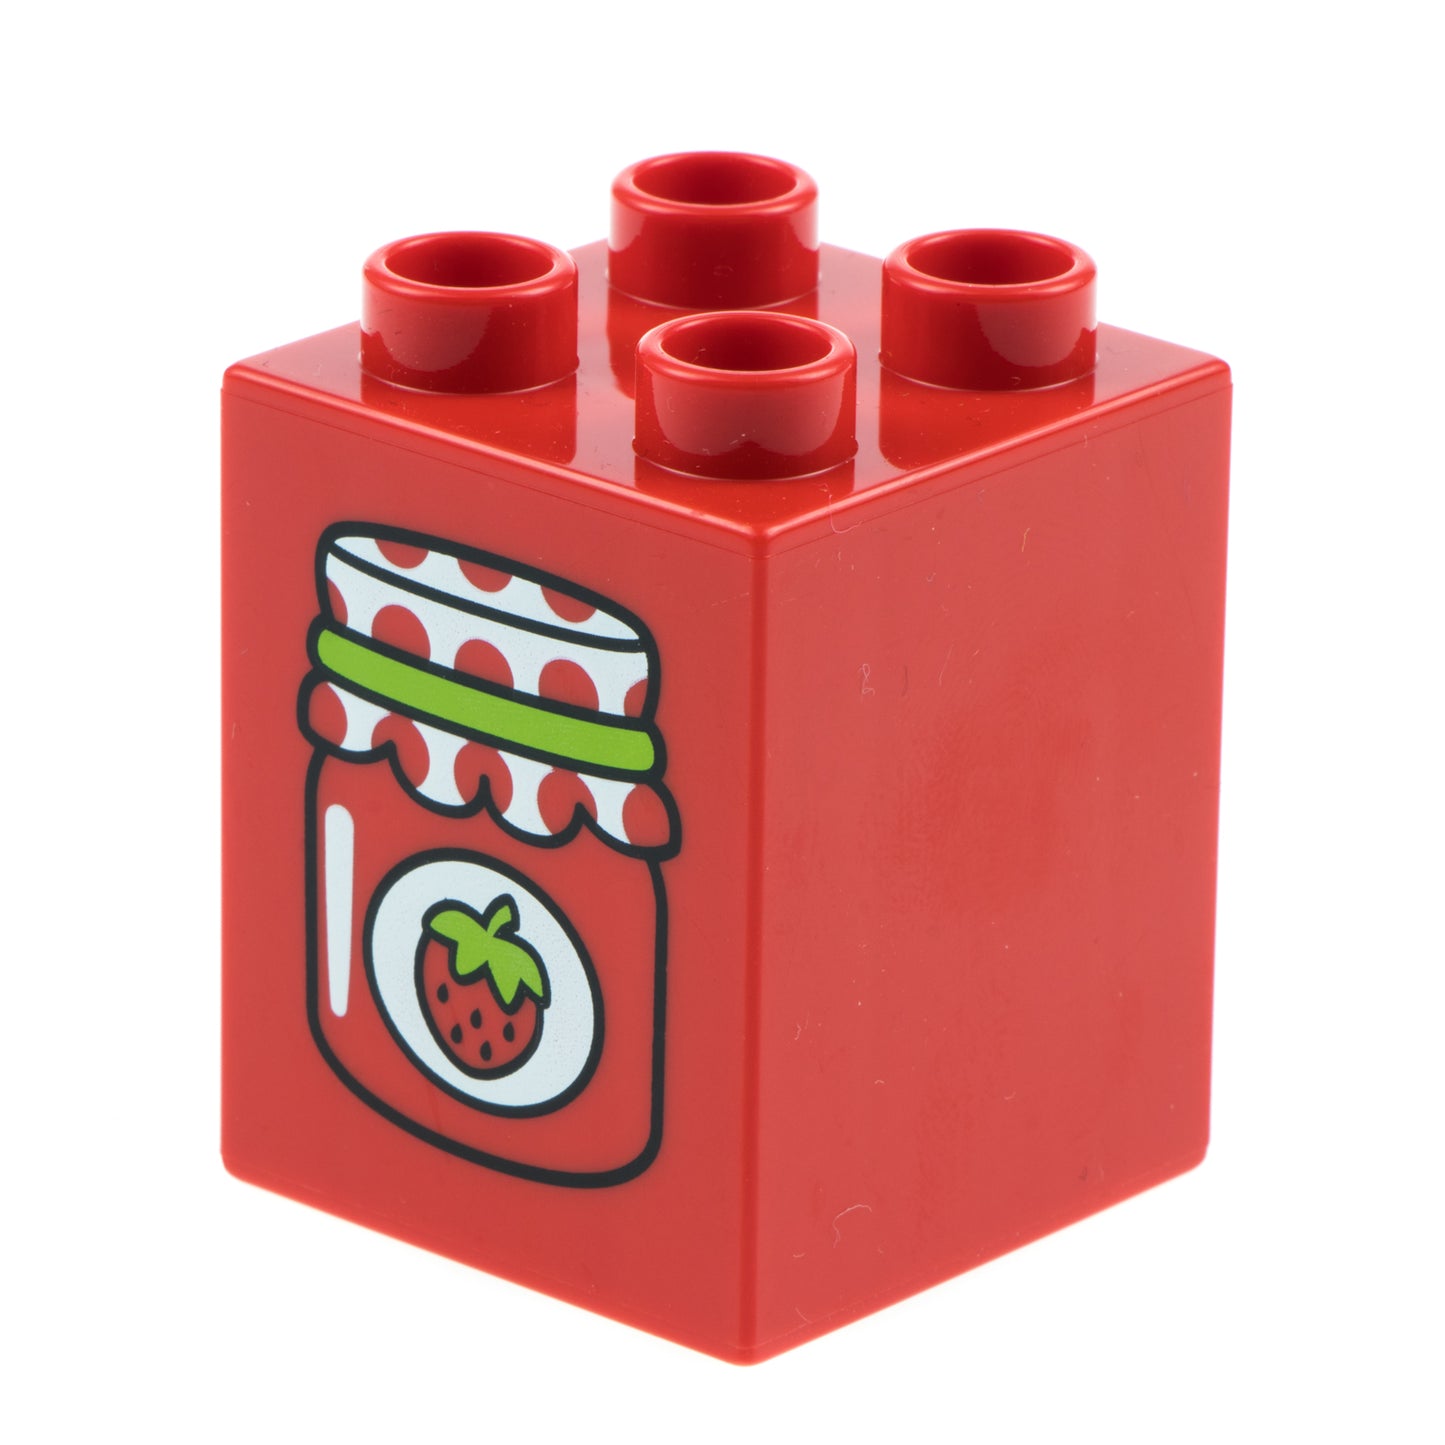 LEGO duplo 31110pr0060 brick 2 x 2 x 2 with Strawberry Jam Jar Print - USADO